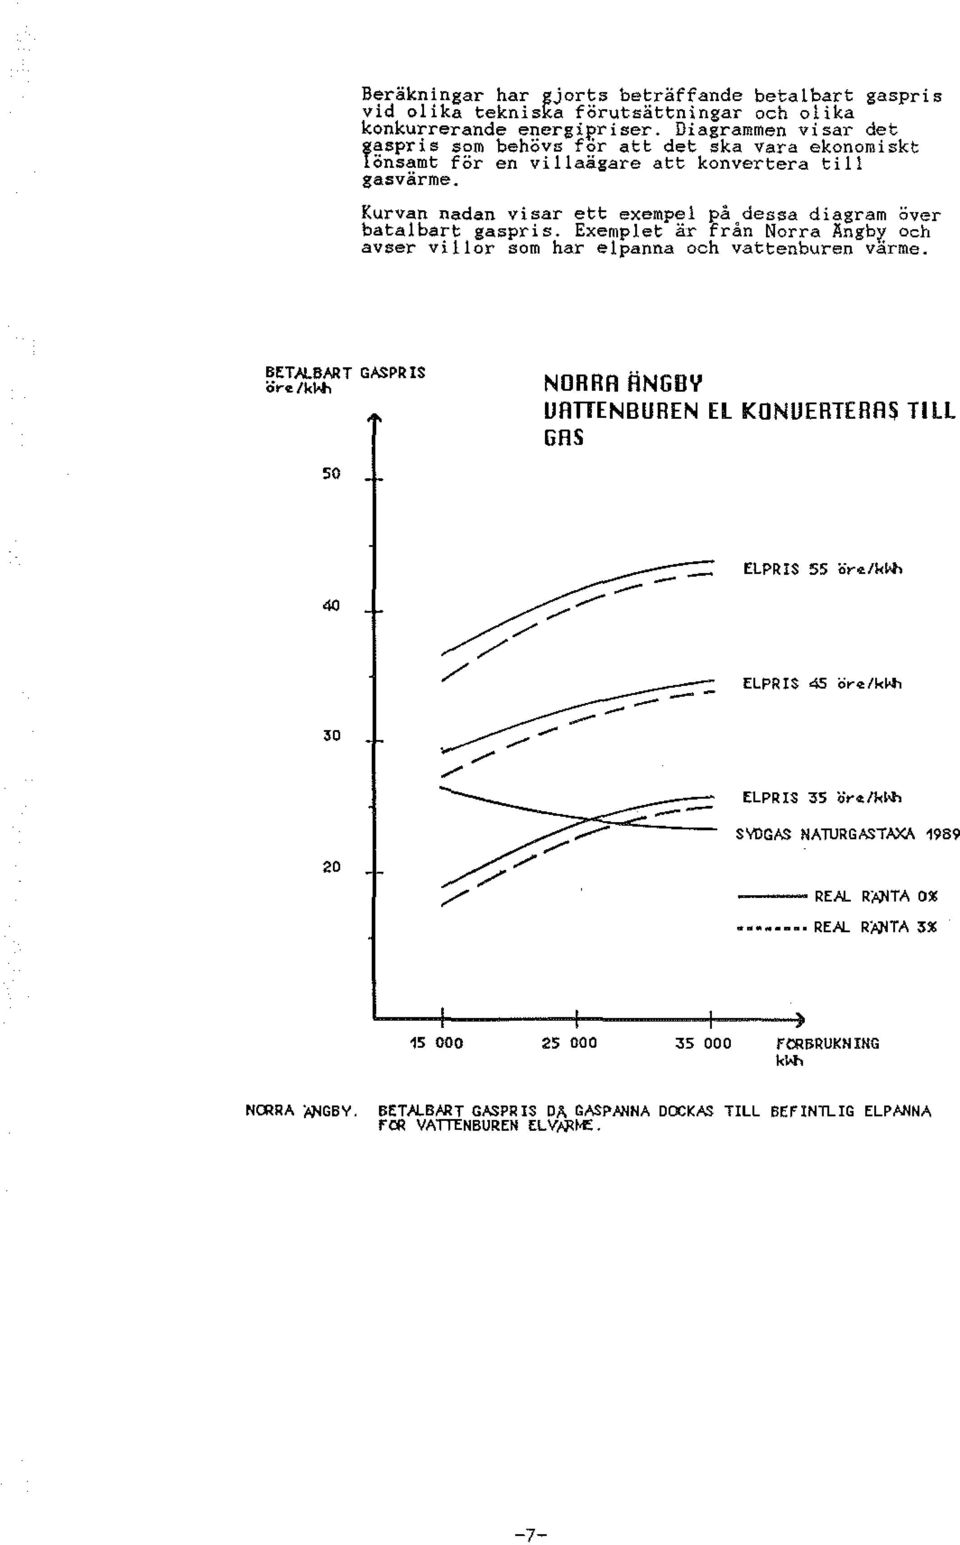 Kurvan nadan visar ett exempe på dessa diagram över batatbart gaspris. Exempet är från Norra Ängbr, och avser vior som har epanna och vattenburen varme.